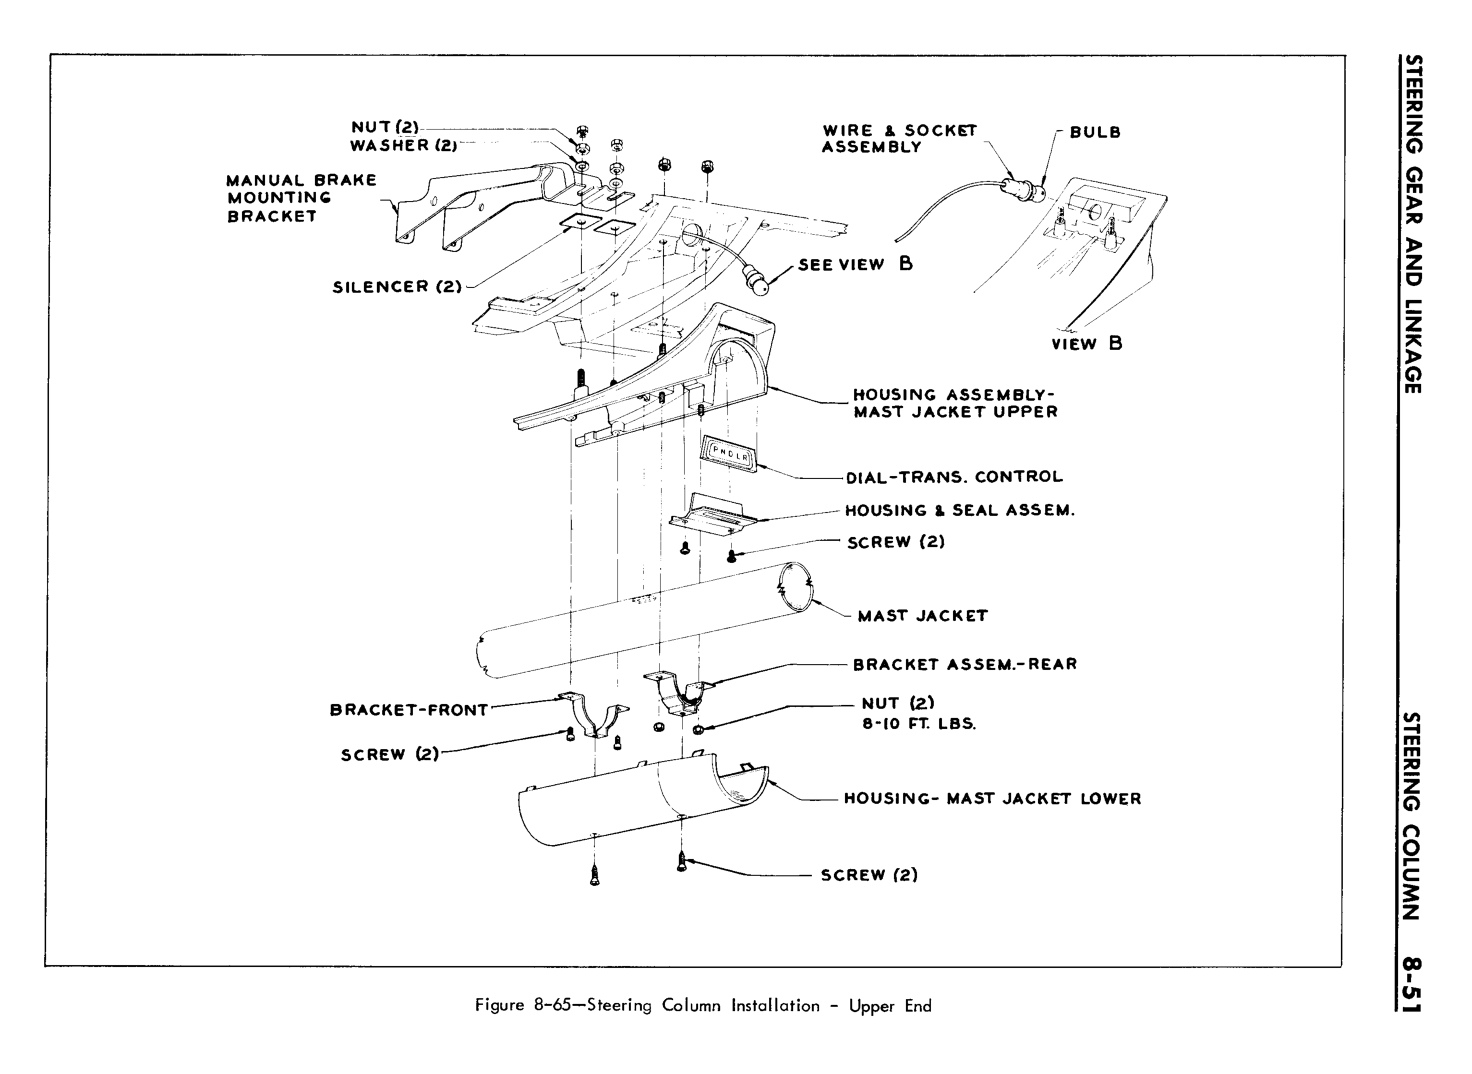 n_08 1961 Buick Shop Manual - Steering-051-051.jpg